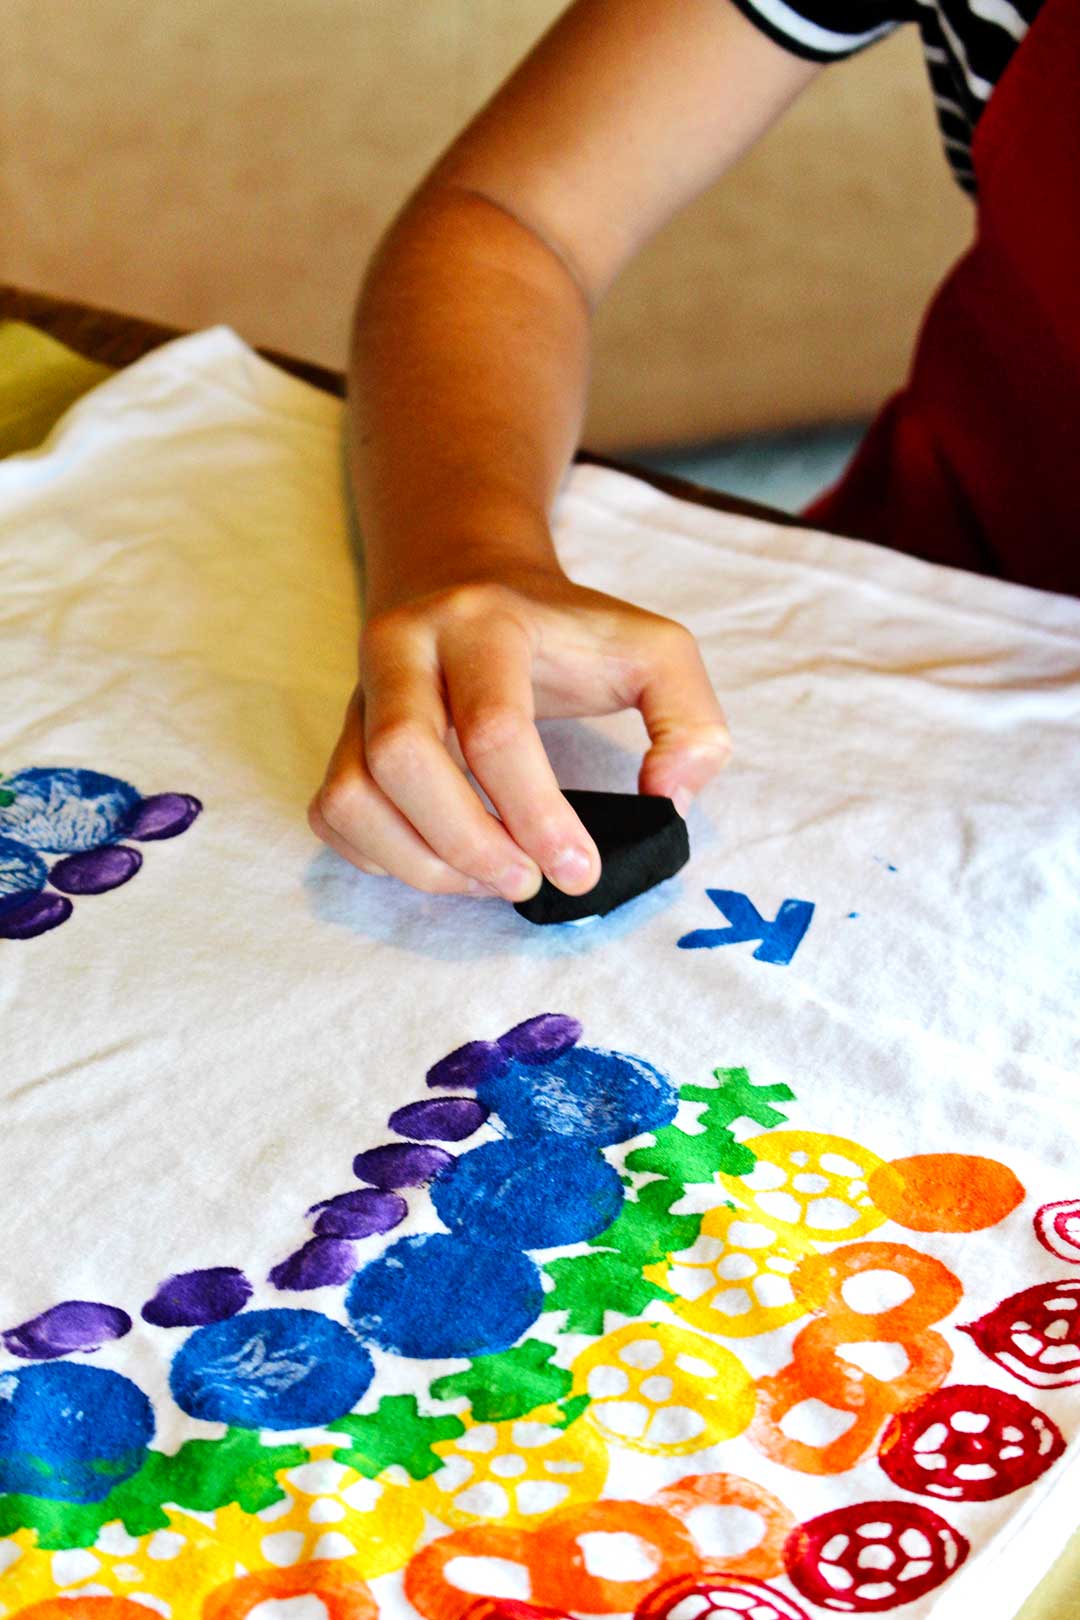 La main de l'enfant estampant des lettres bleues sur son T-shirt blanc.